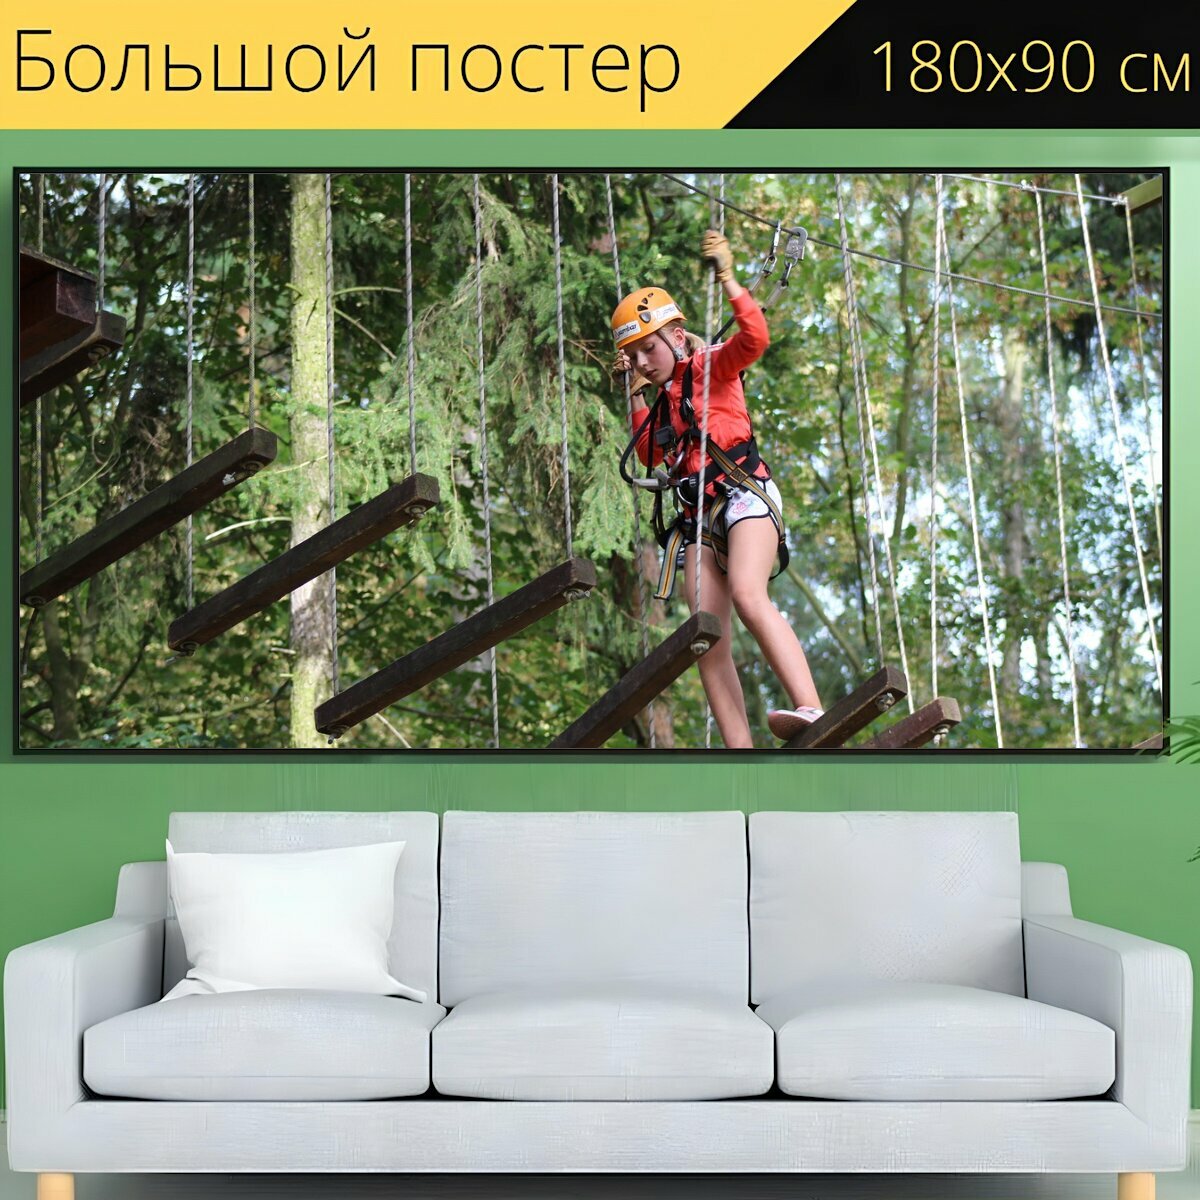 Большой постер "Веревочный парк кладно движение" 180 x 90 см. для интерьера